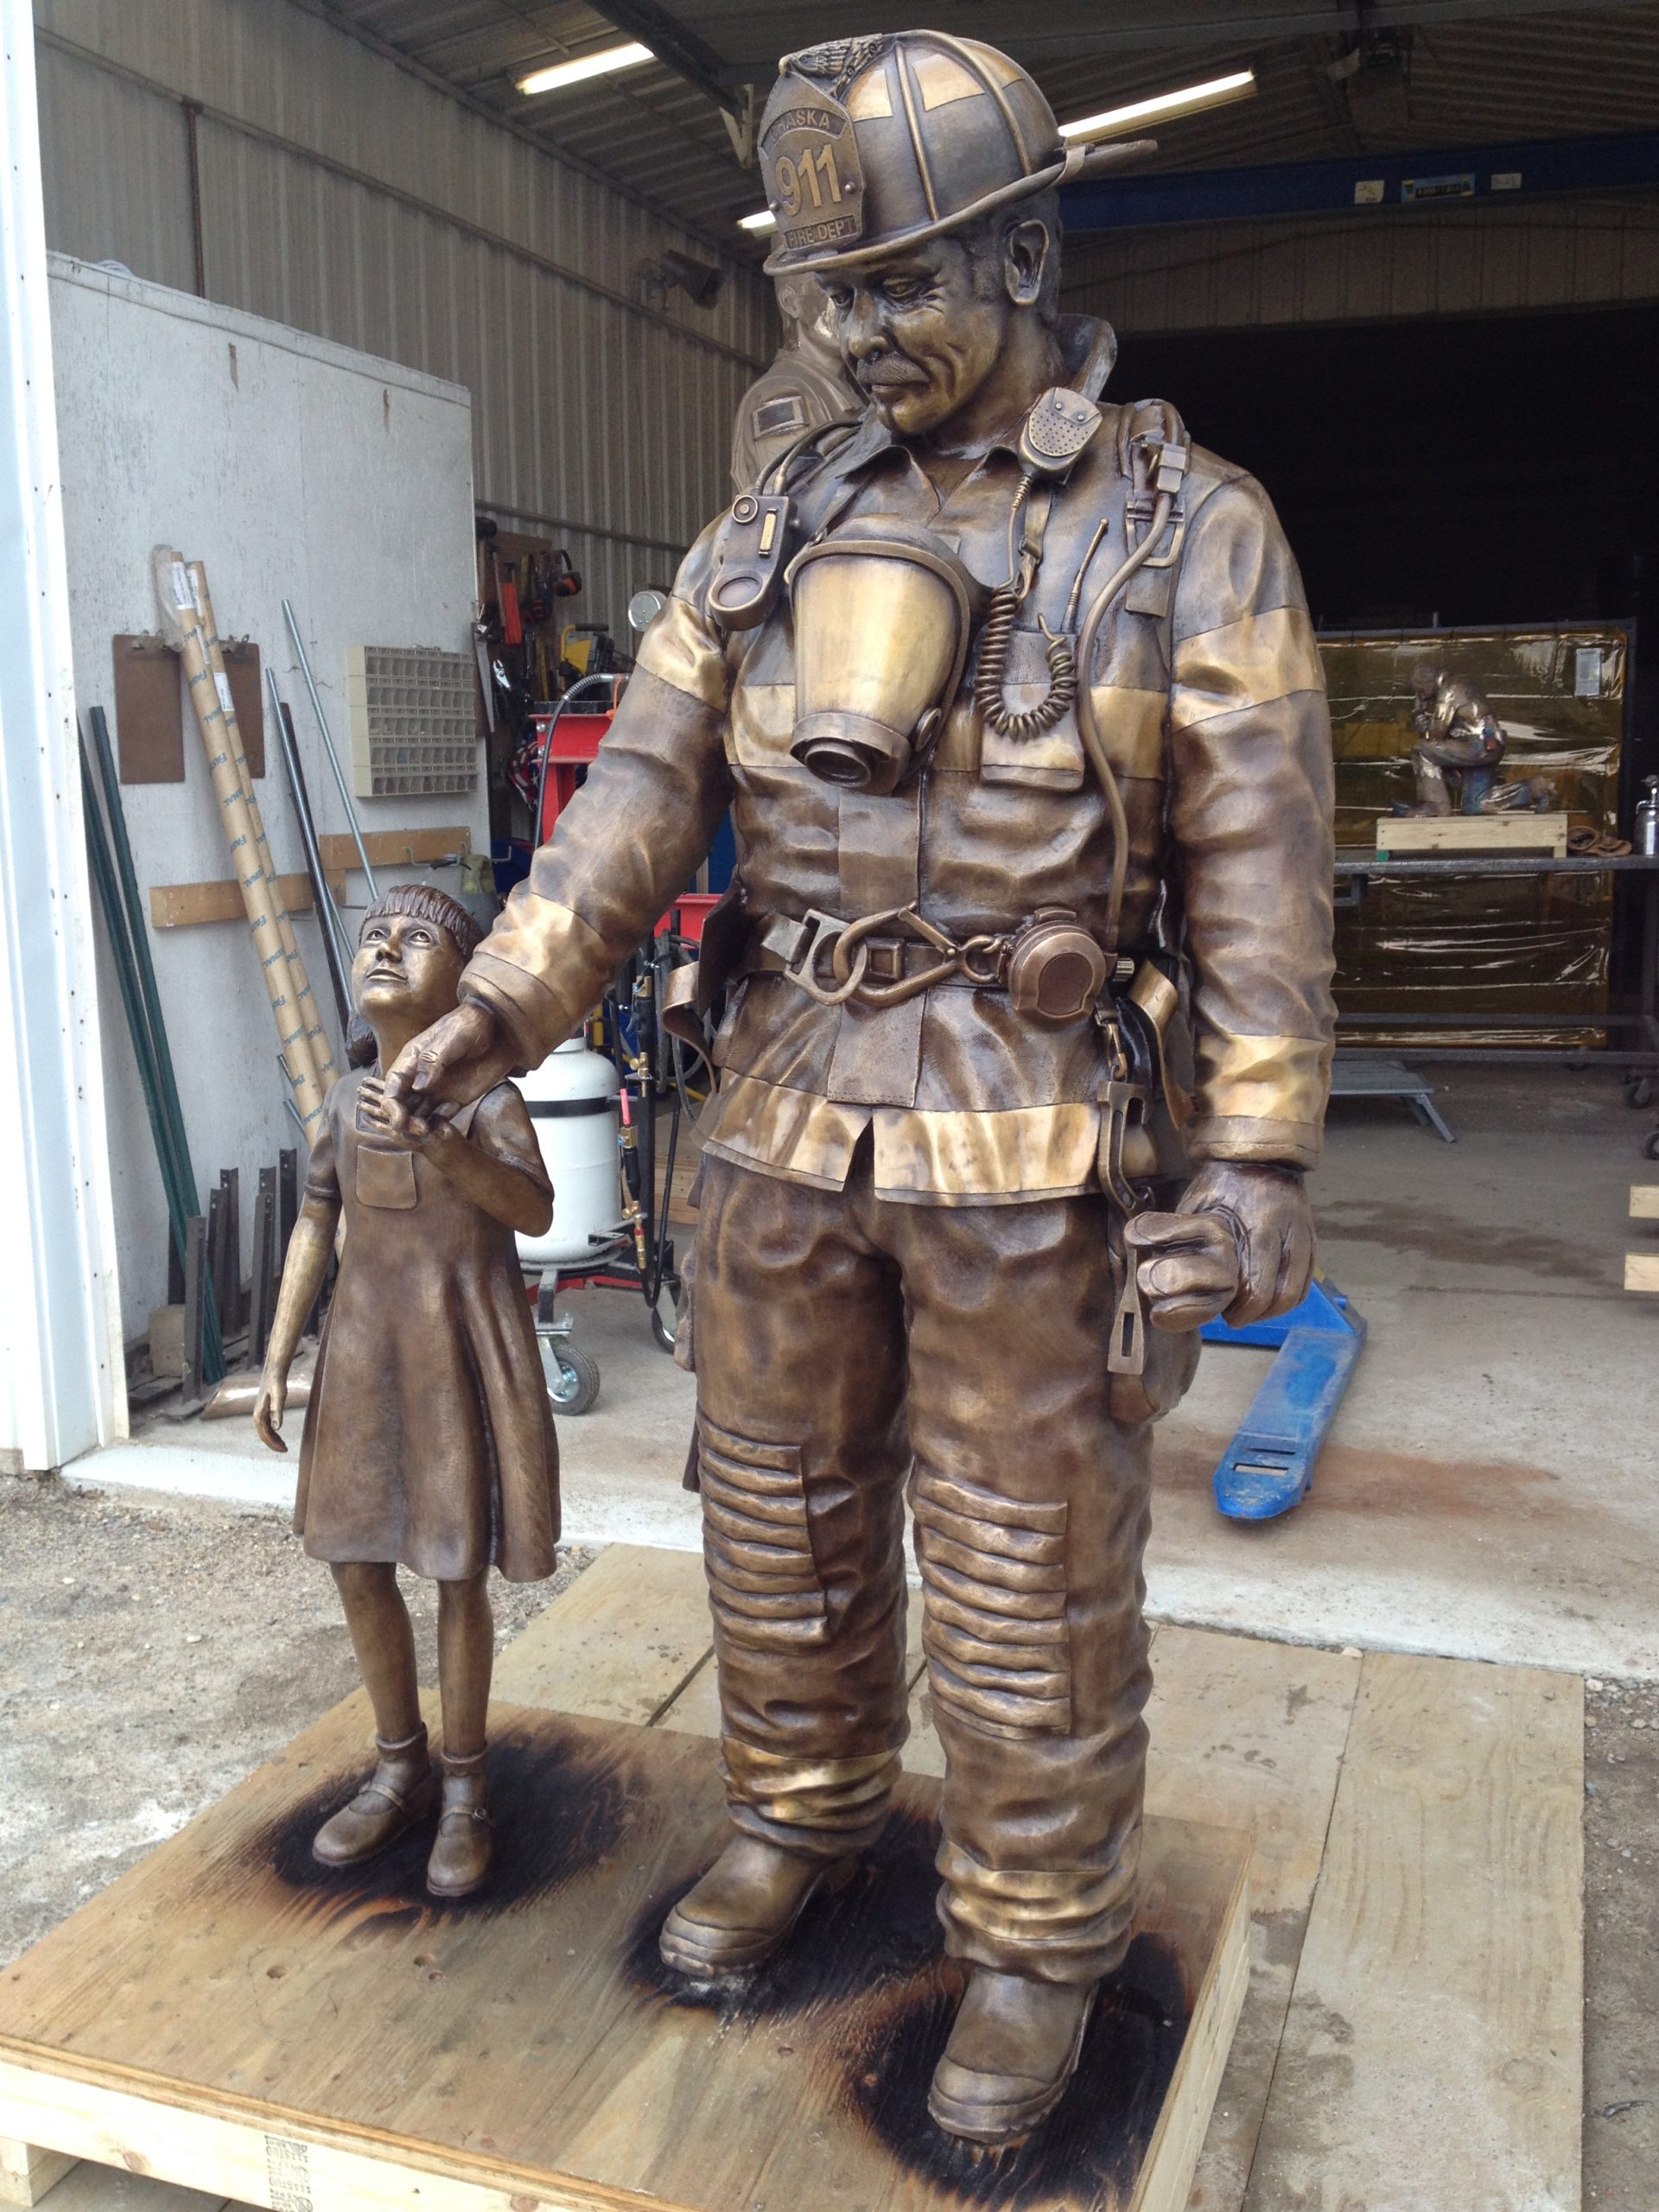 firefighter statue in progress